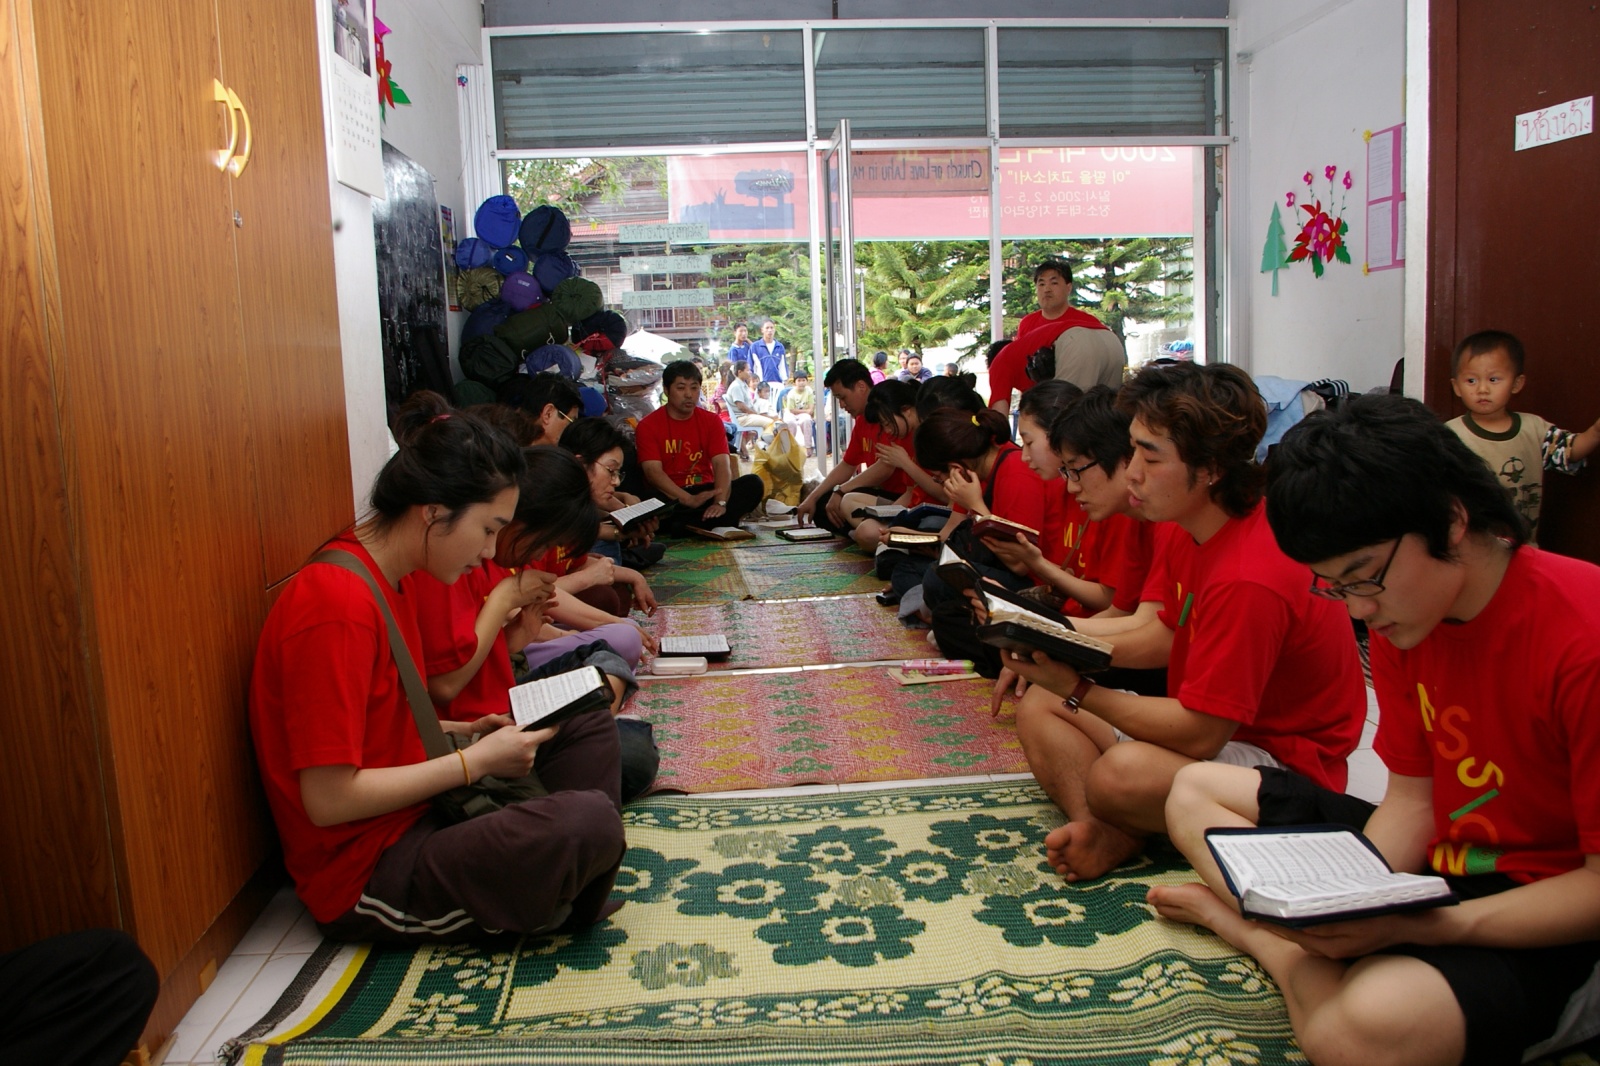 IMGP0639.JPG : 2006년 태국 단기선교